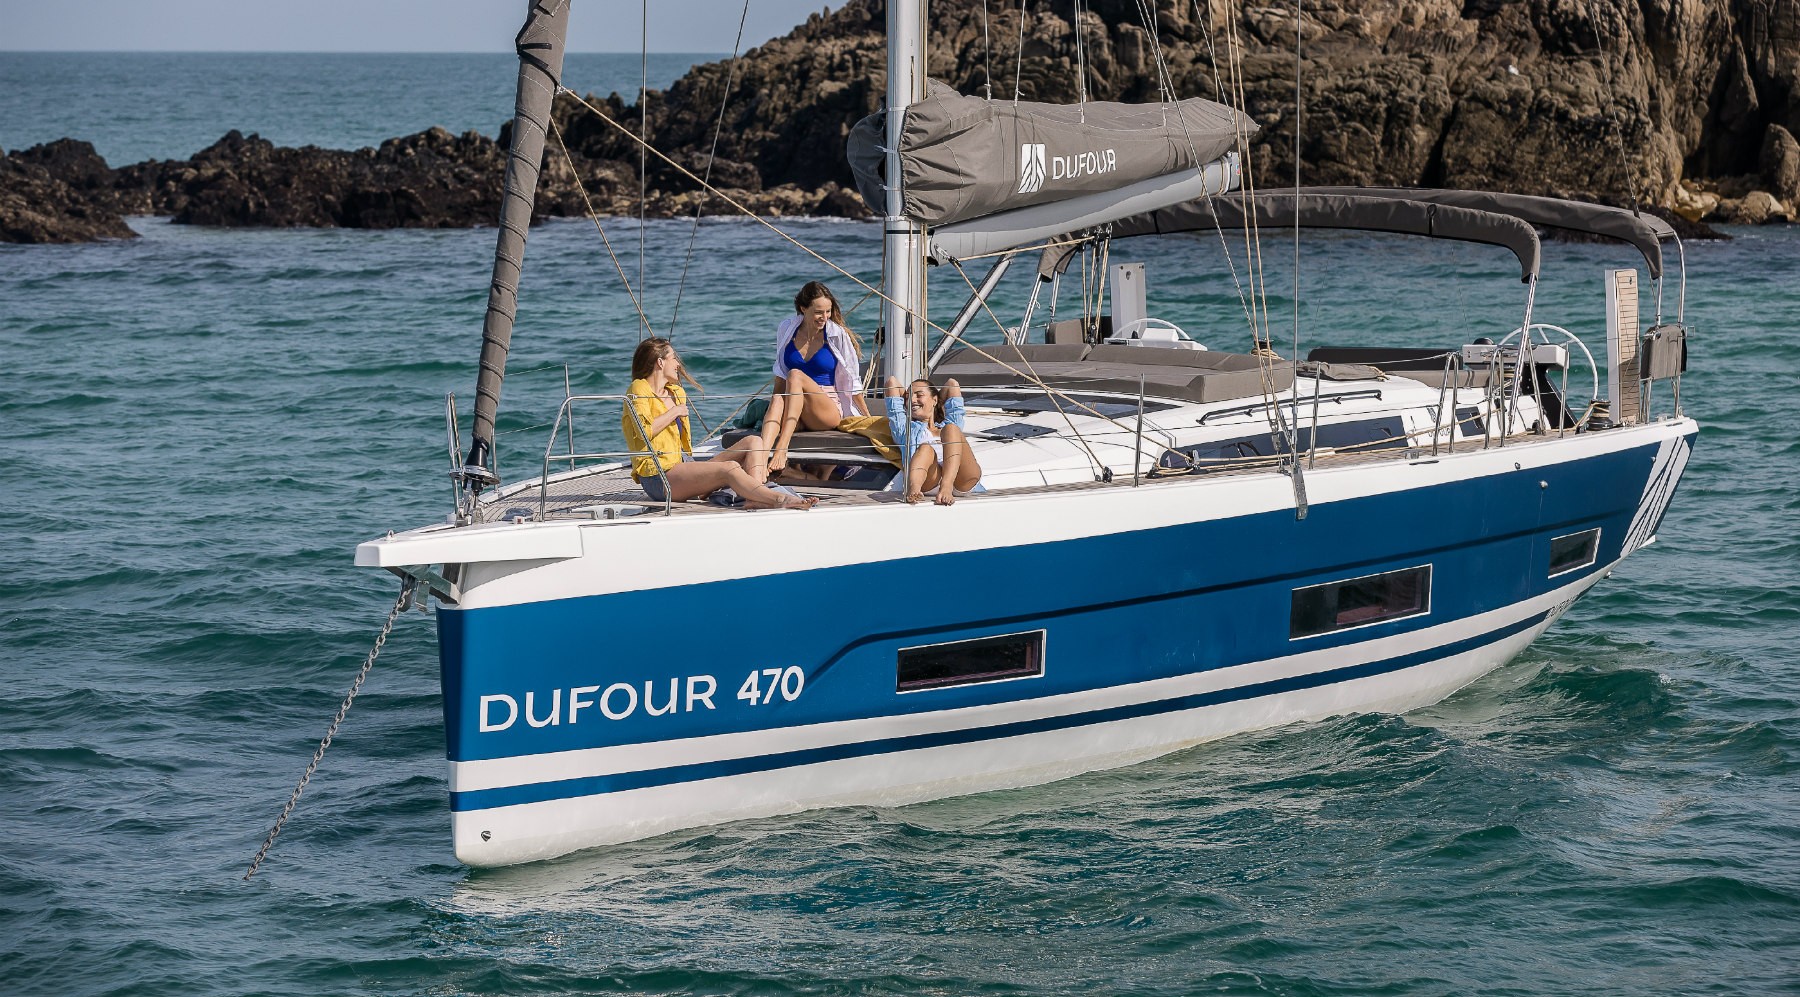 Le nouveau Dufour 470, Chantier Dufour Yachts, Baie de Quiberon le 17 mars 2021, Photo © Jean-Marie LIOT / Dufour Yachts